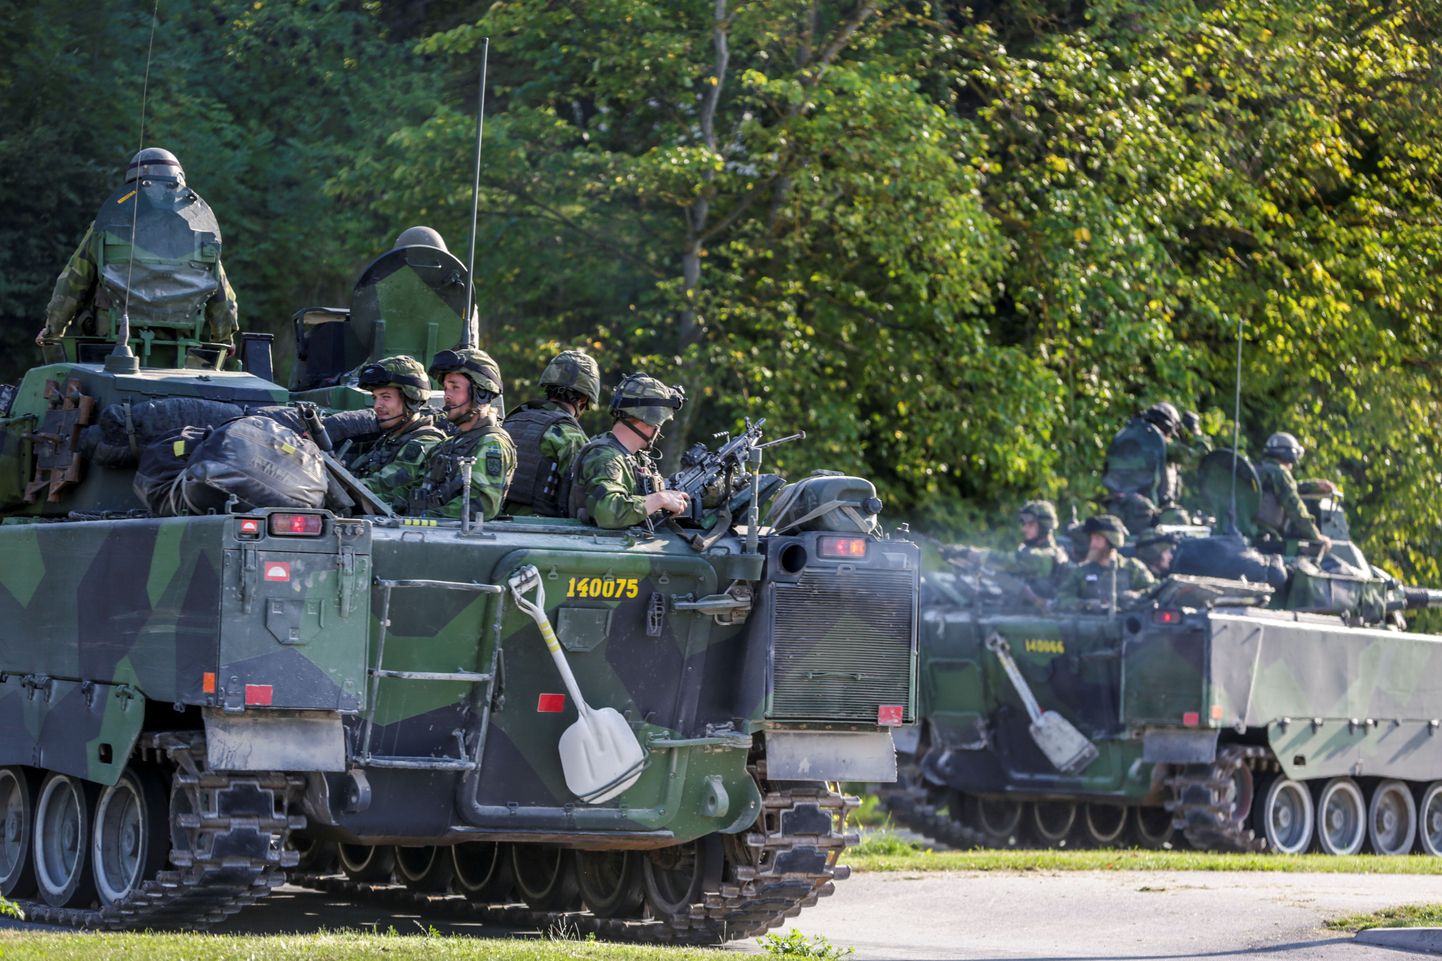 Rootsi armee soomustransportöörid ja sõdurid mullu septembris Gotlandil.